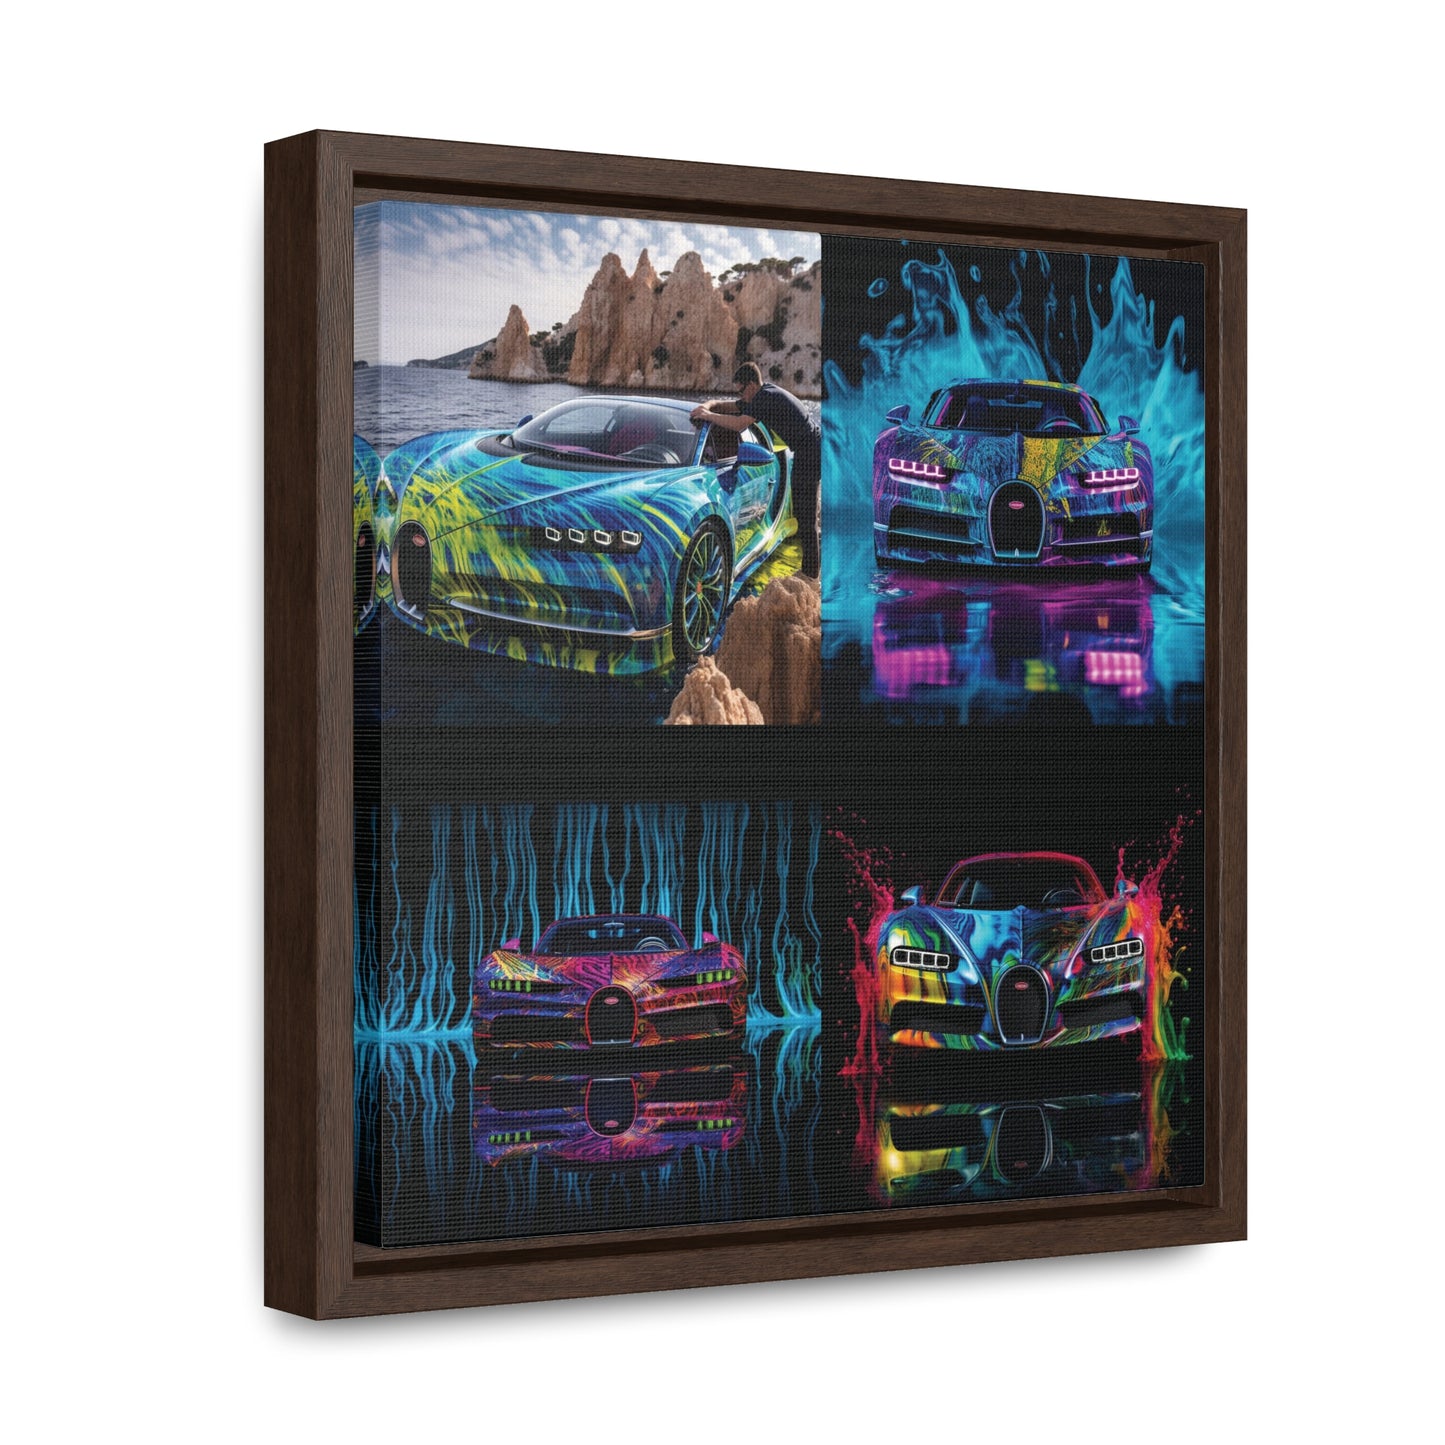 Gallery Canvas Wraps, Square Frame Bugatti Water 5